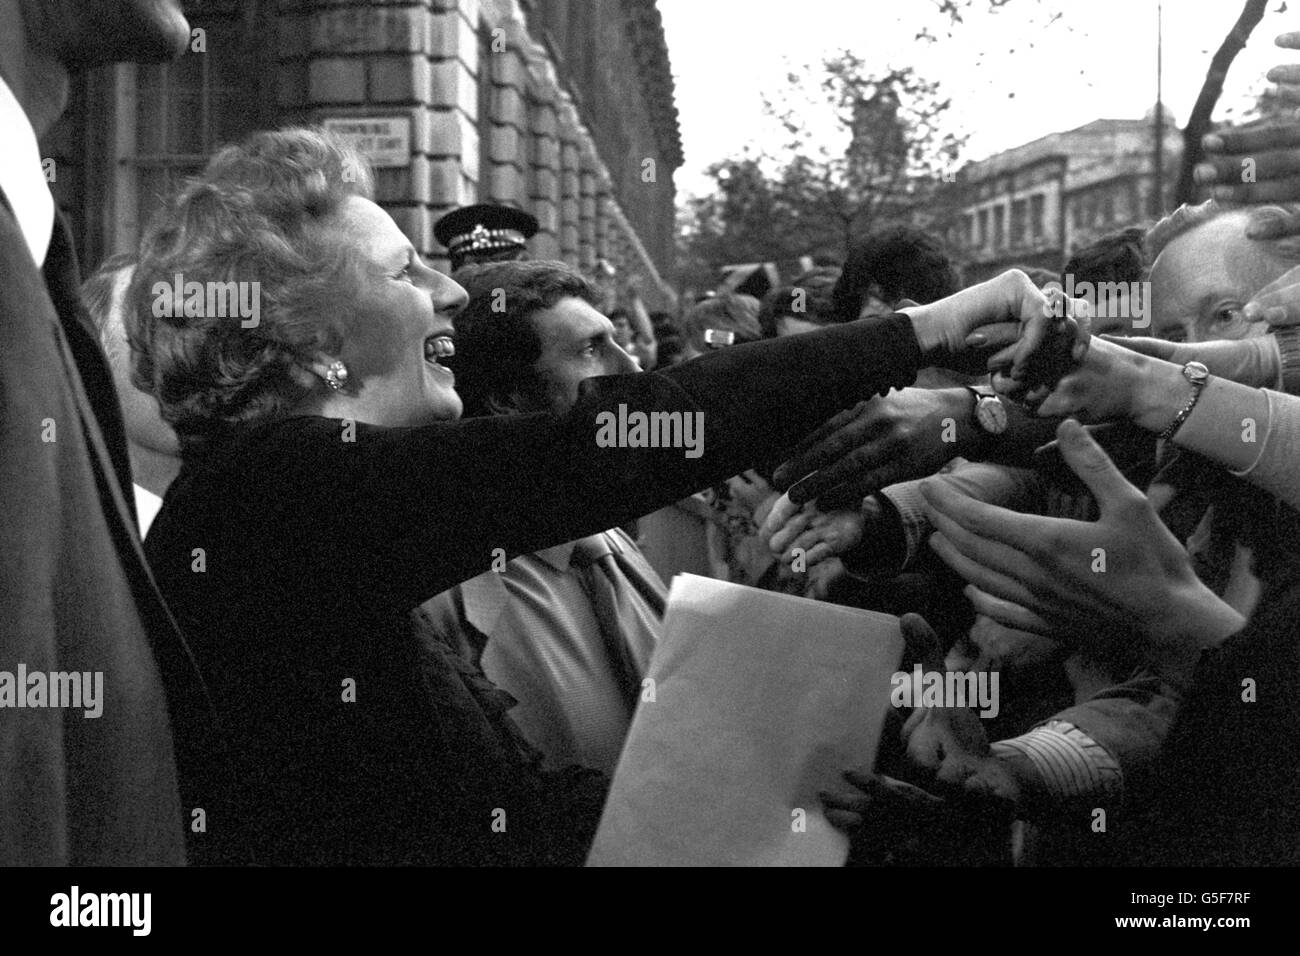 Premierministerin Margaret Thatcher kehrt nach dem Wahlsieg in die Downing Street 10 zurück. Anstatt ihren offiziellen Wohnsitz zu betreten, bestand sie darauf, zum Ende der Straße und zur Ecke von Whitehall zu gehen, um sich die Hände mit den Wohlbejahern zu schütteln. Stockfoto